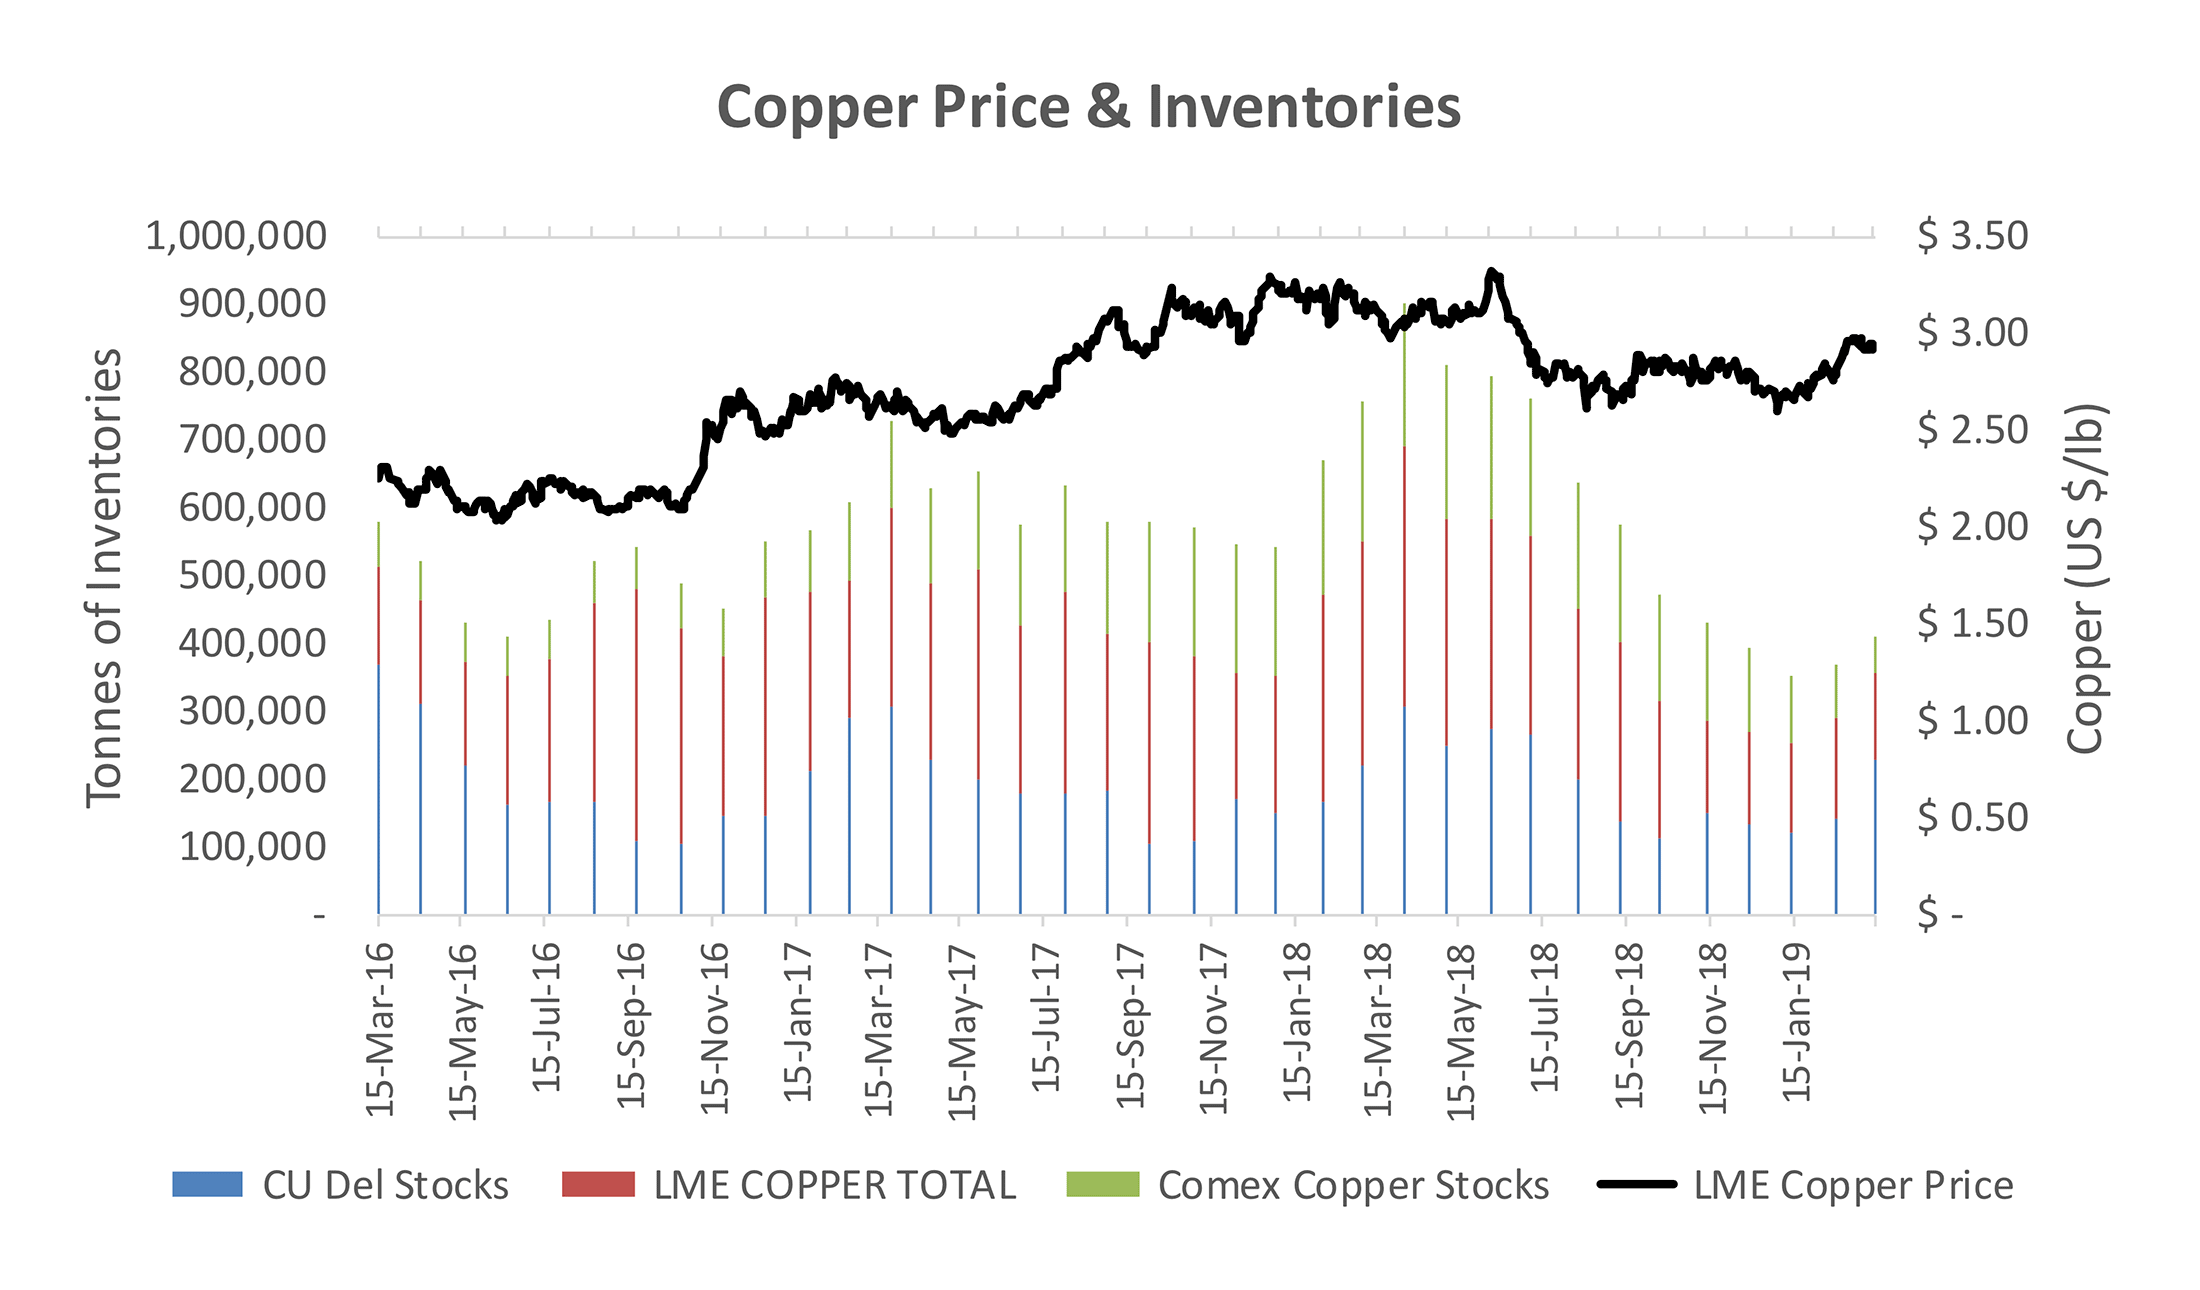 Copper Price & Inventories - Source: Haywood Securities